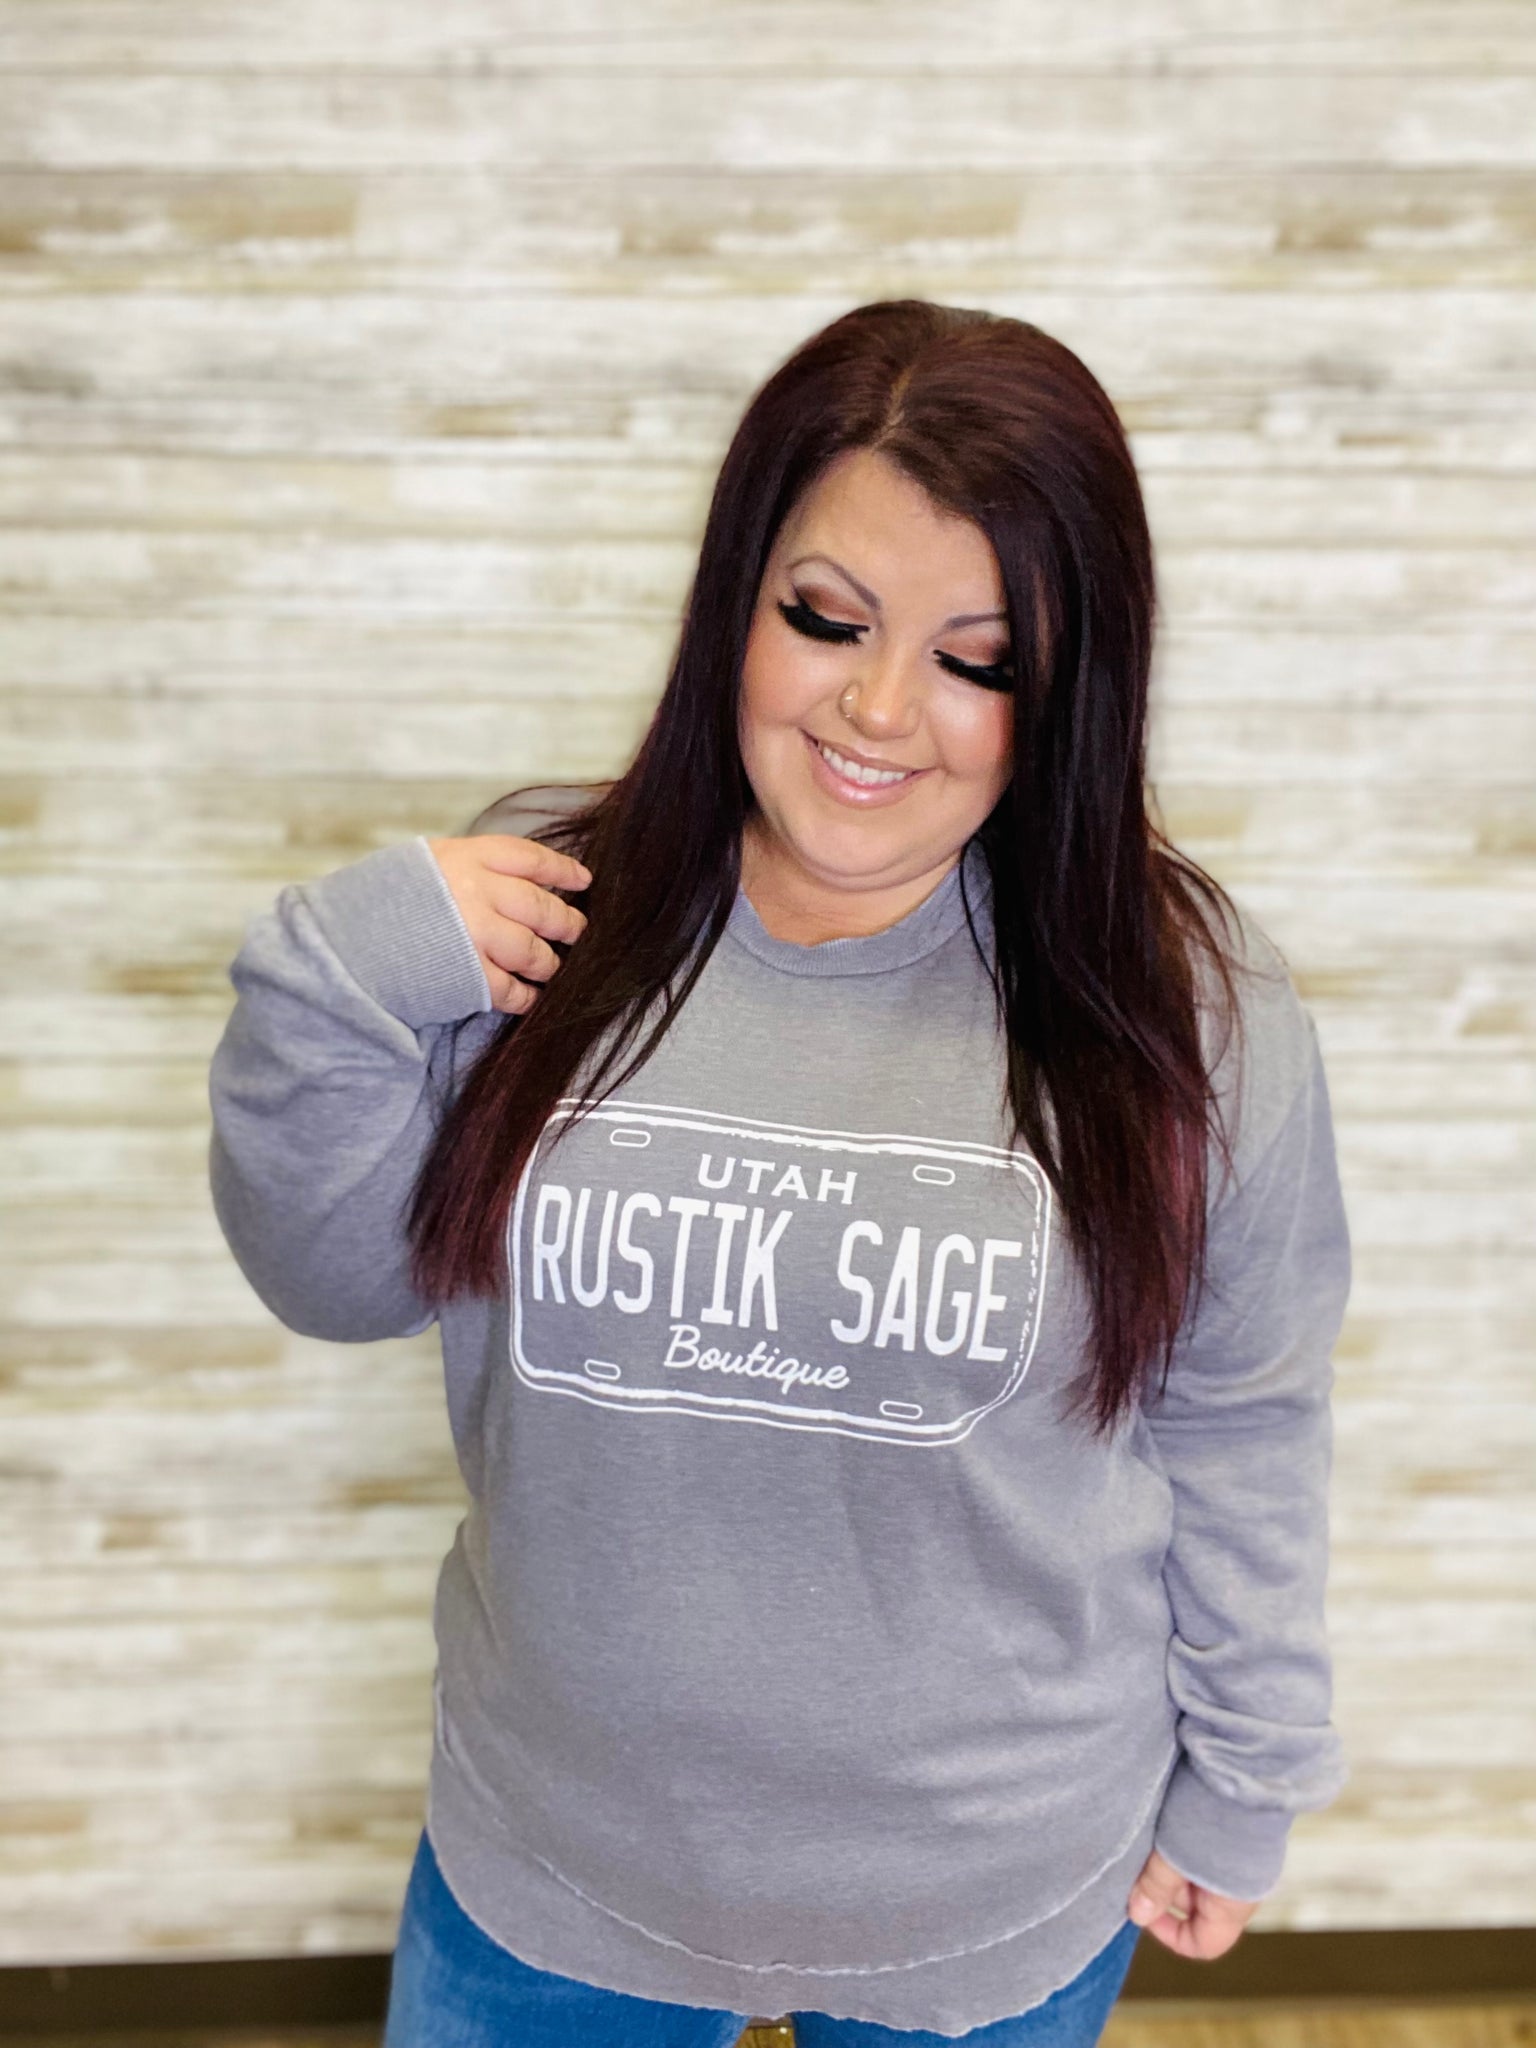 Rustik Sage Grey Fleece Pullover Sweatshirt - Rustik Sage Boutique